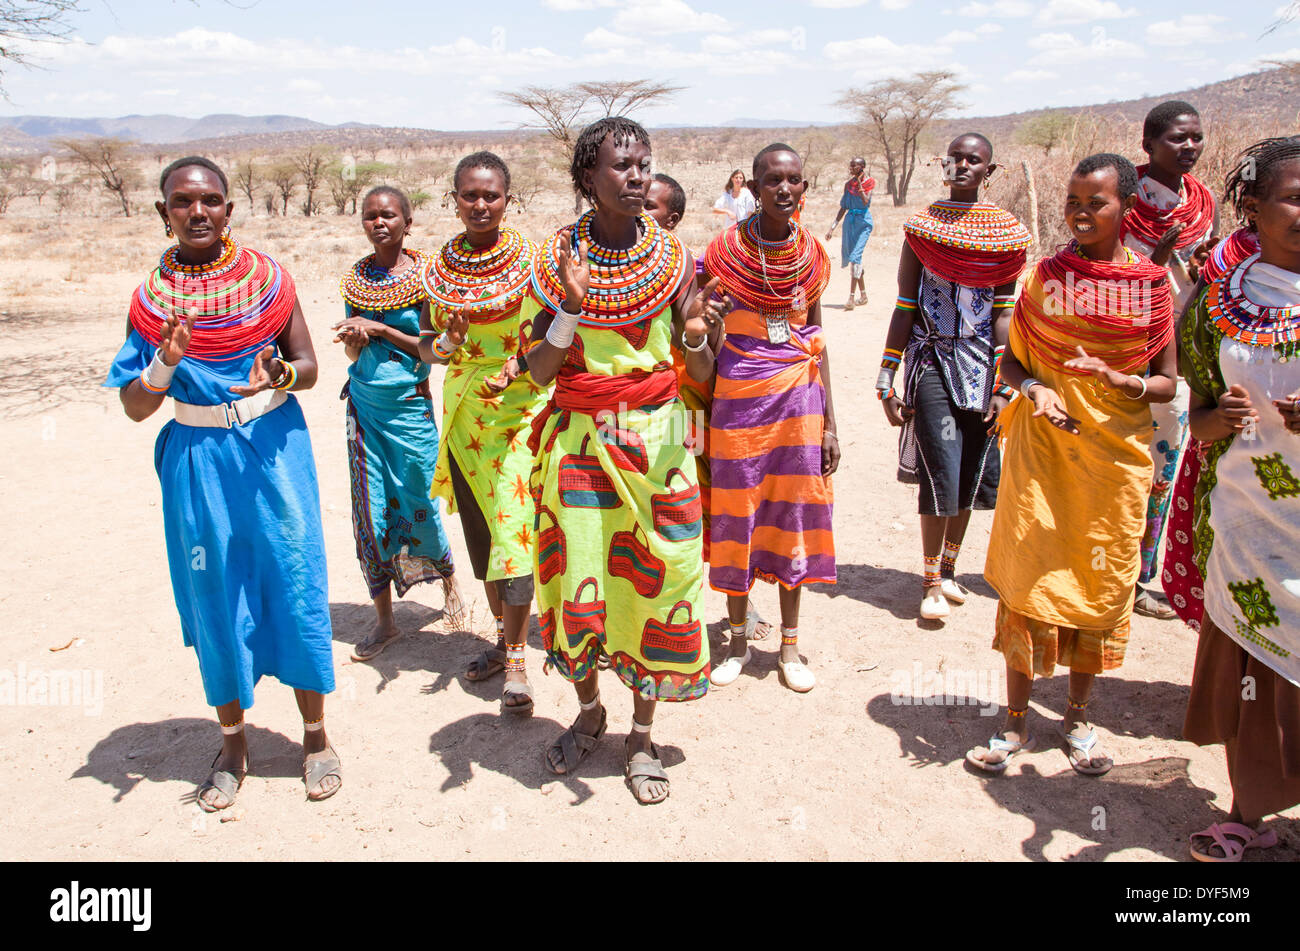 Les membres de la tribu Samburu dans une danse traditionnelle, au Kenya Banque D'Images